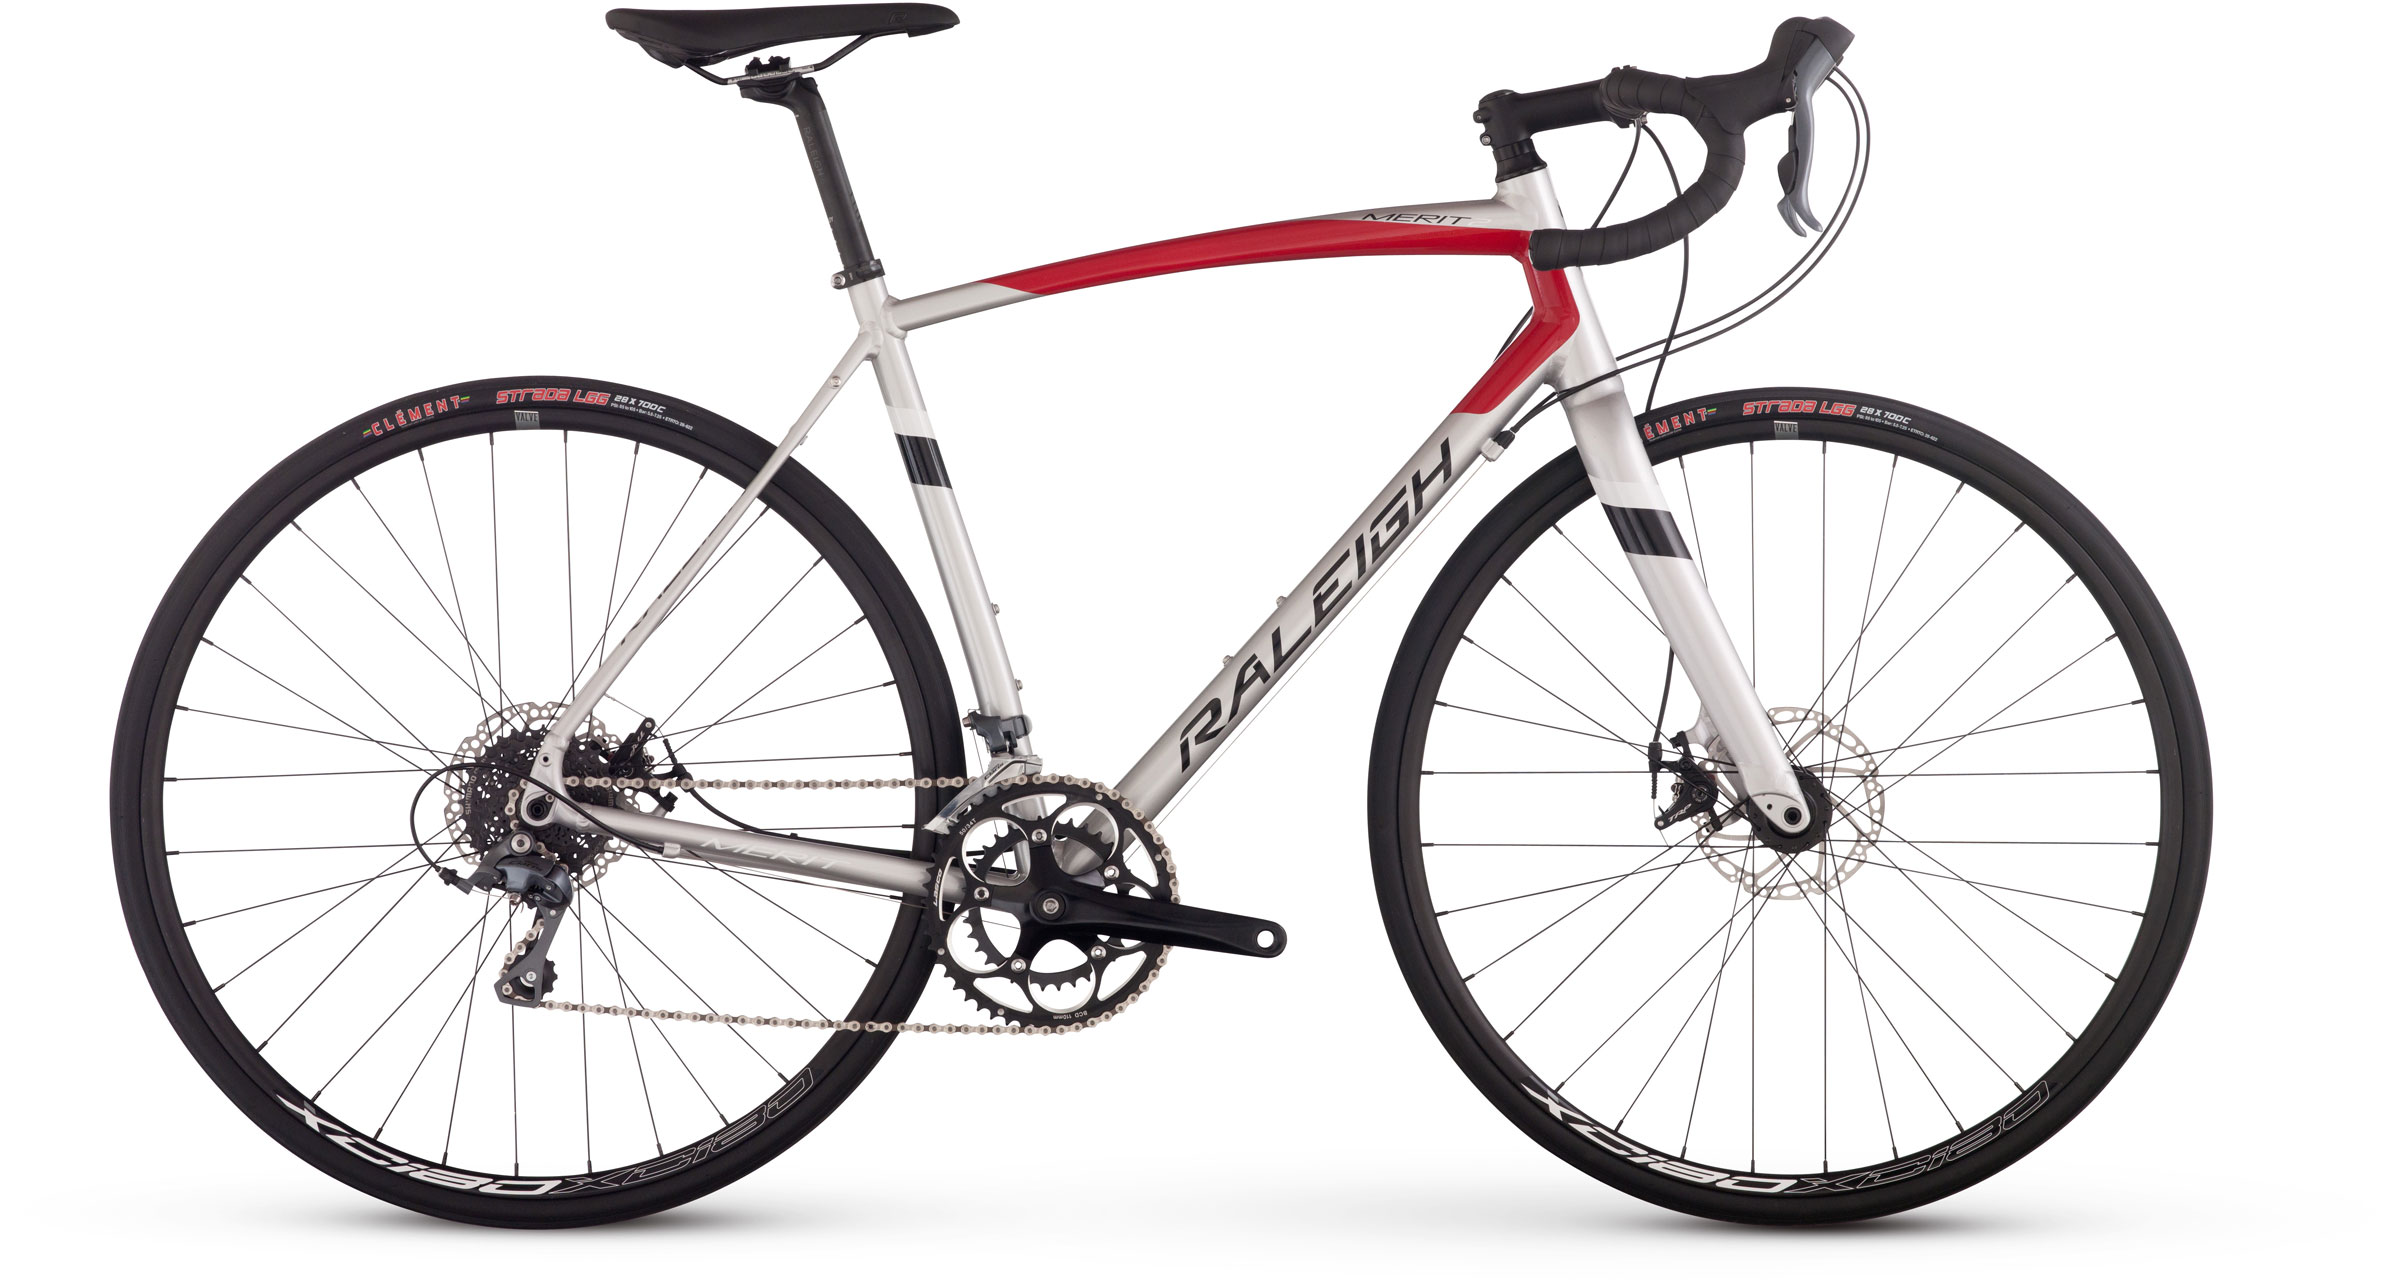 2017 Raleigh Merit 2 - Bicycle Details 